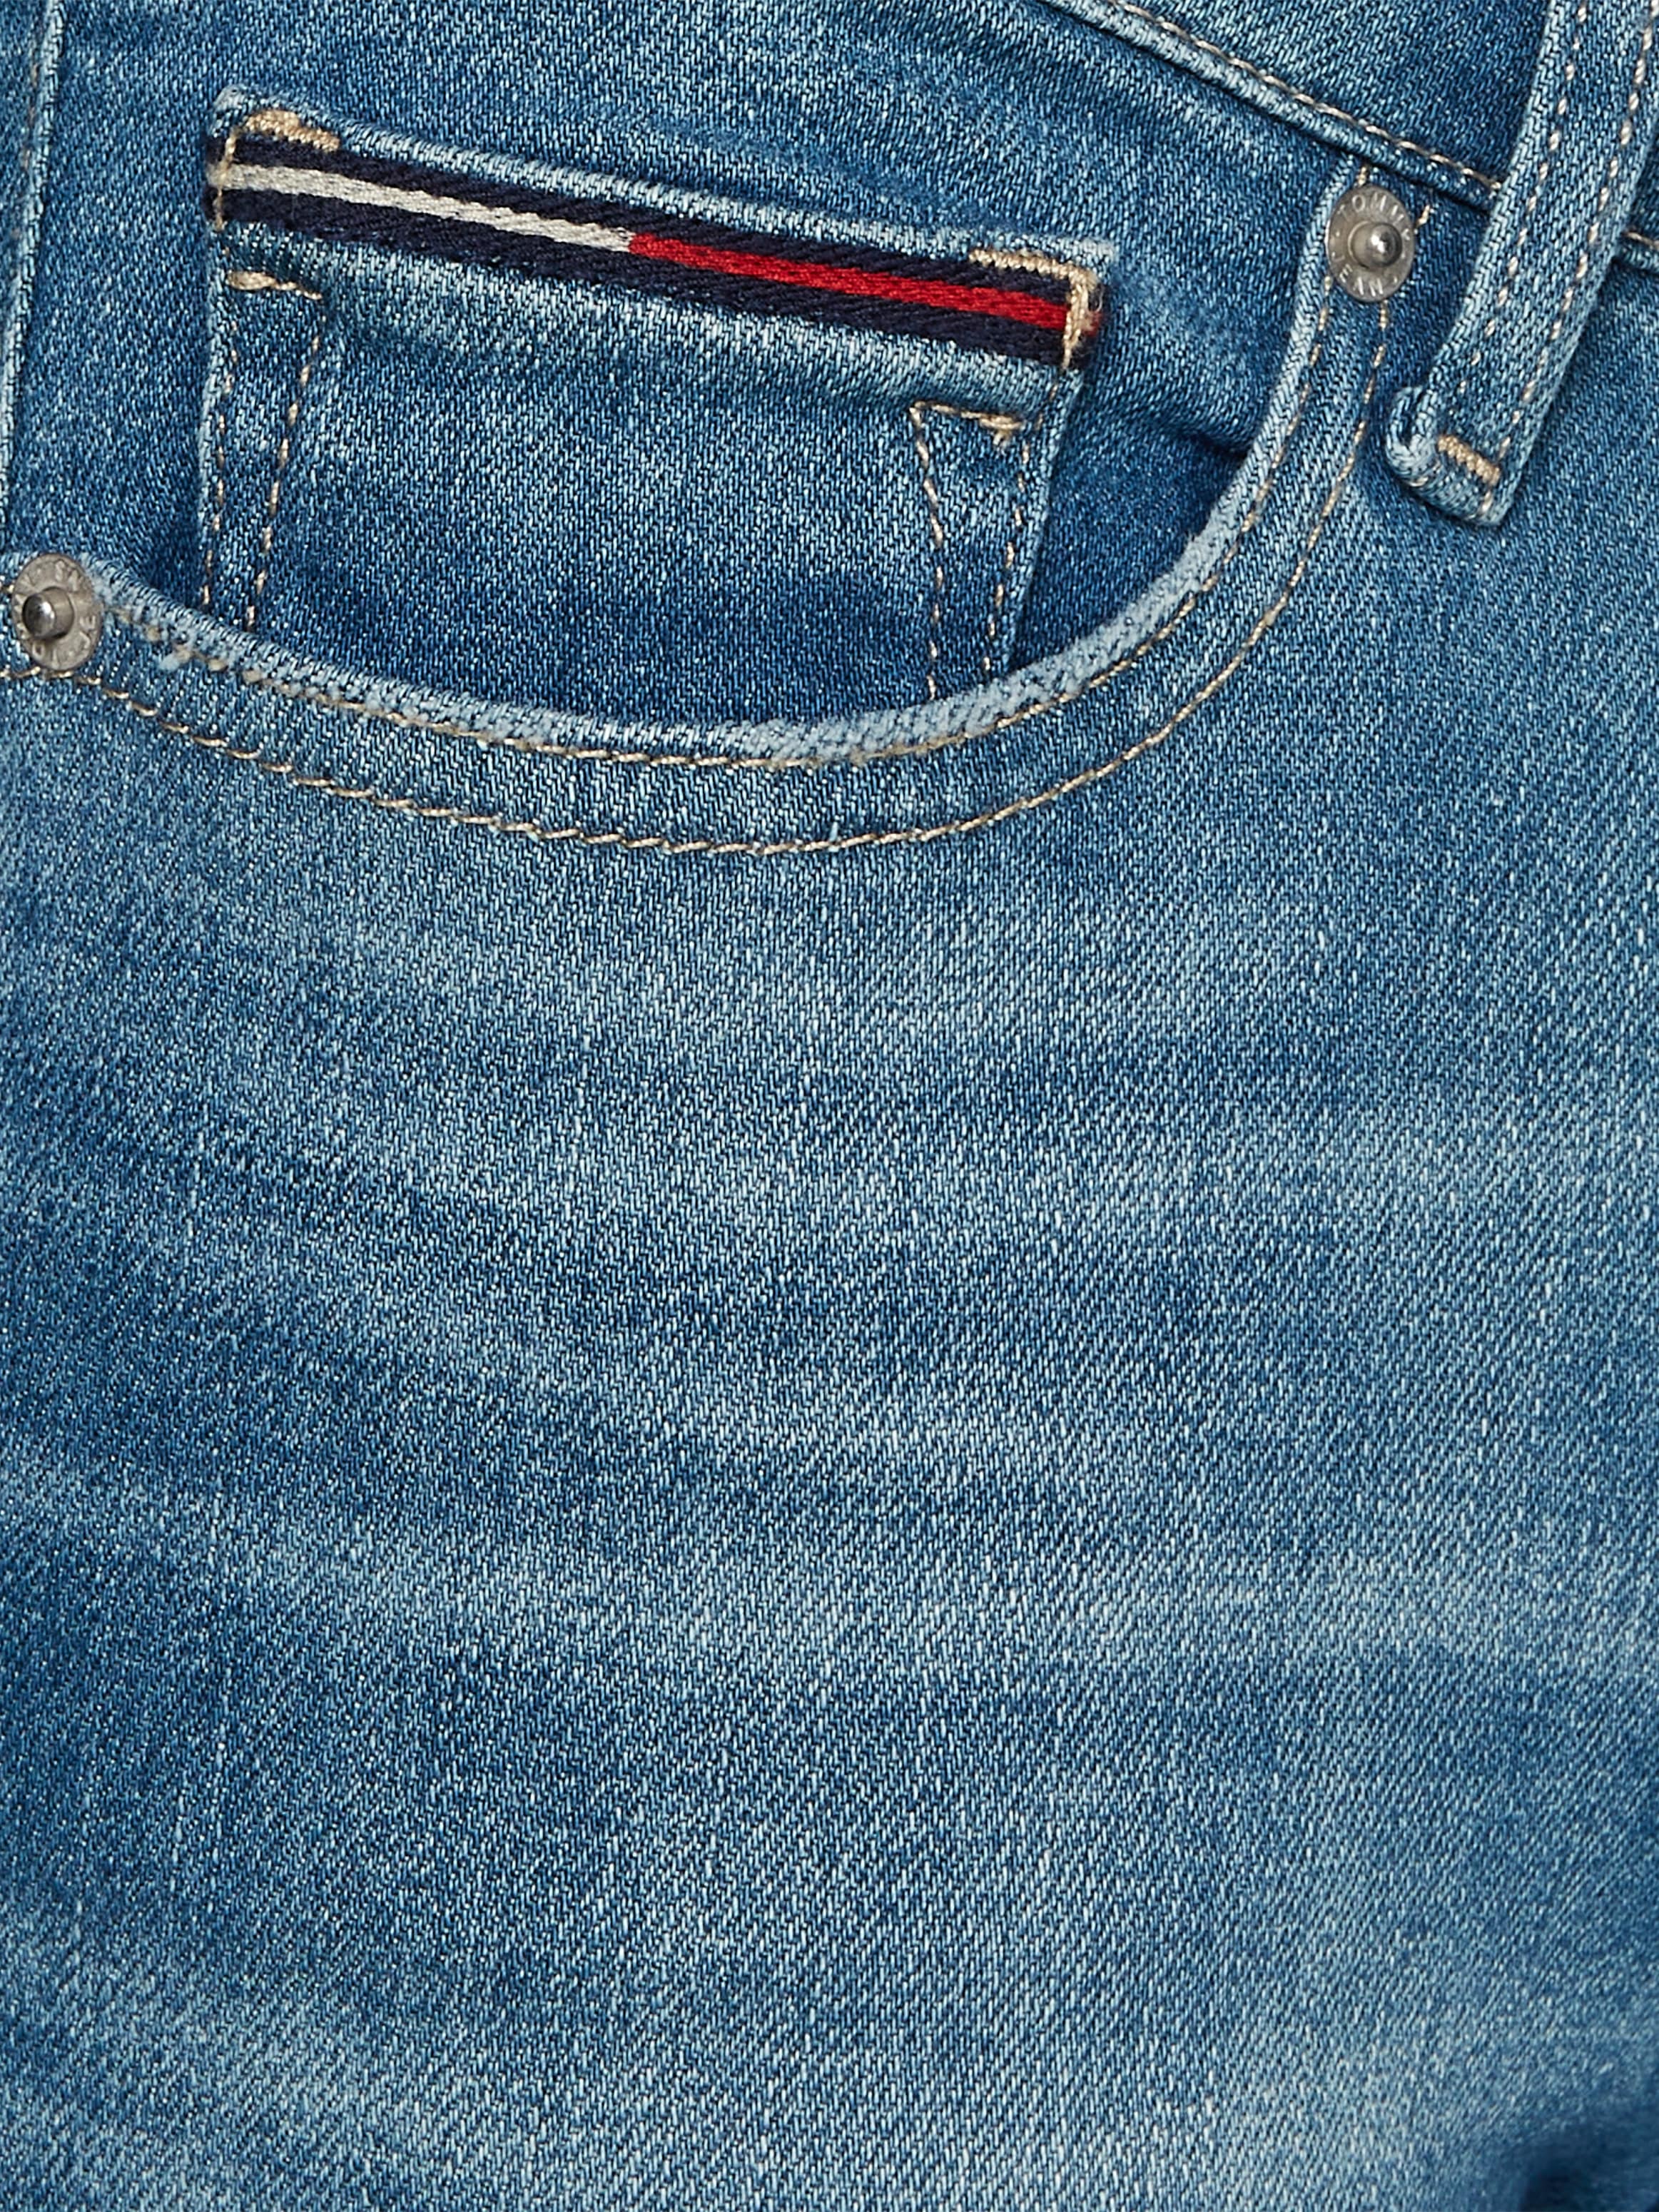 Labelapplikationen Tommy bei Jeans mit ♕ Skinny-fit-Jeans, dezenten